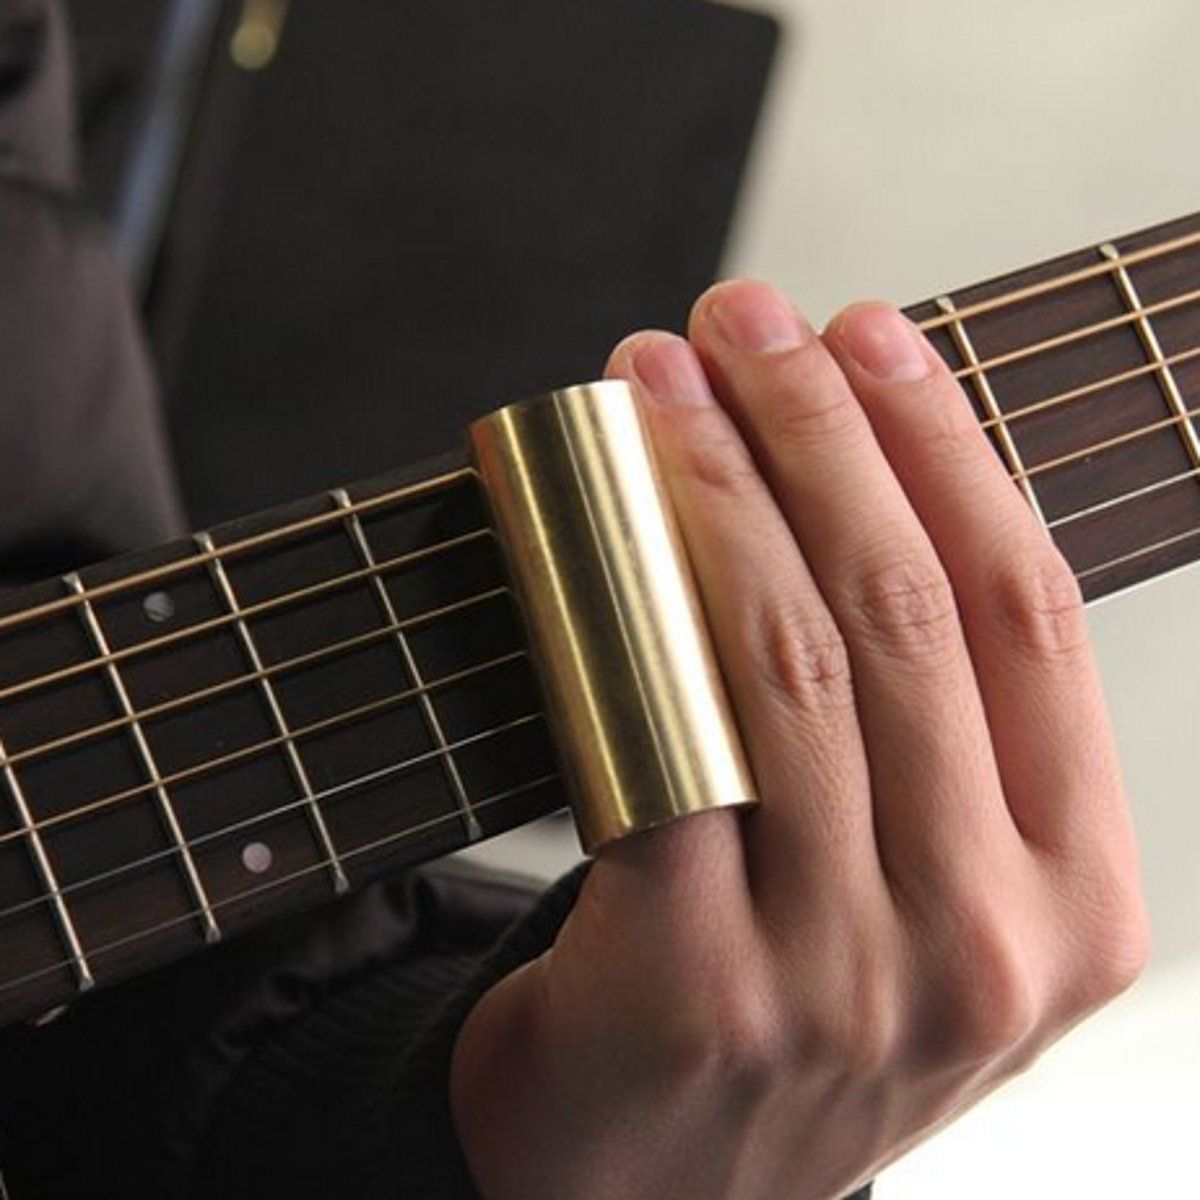 60mm-Brass-Guitar-Bass-Bruce-Finger-Knuckle-Slides-Parts-Musical-Accessories-1290867